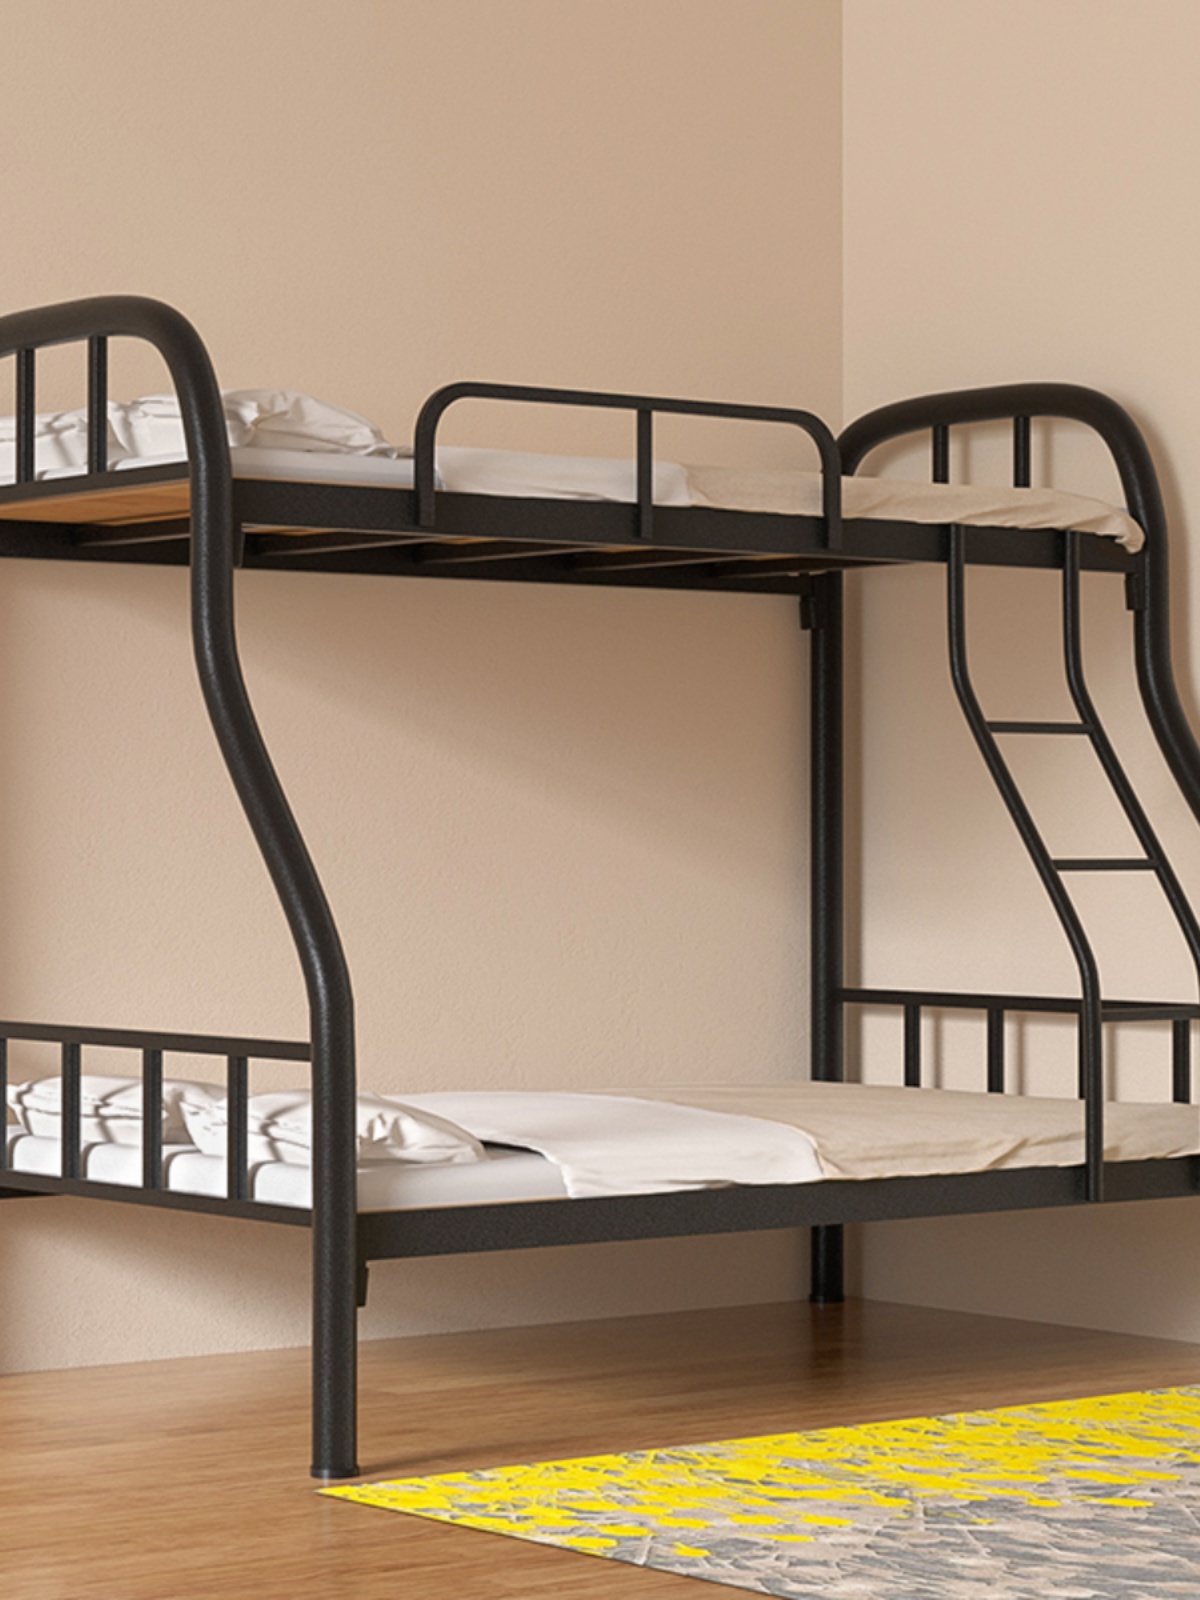 厂铁艺子母床铁床儿童床上下铺双层床上下床高低床两层床双人床销